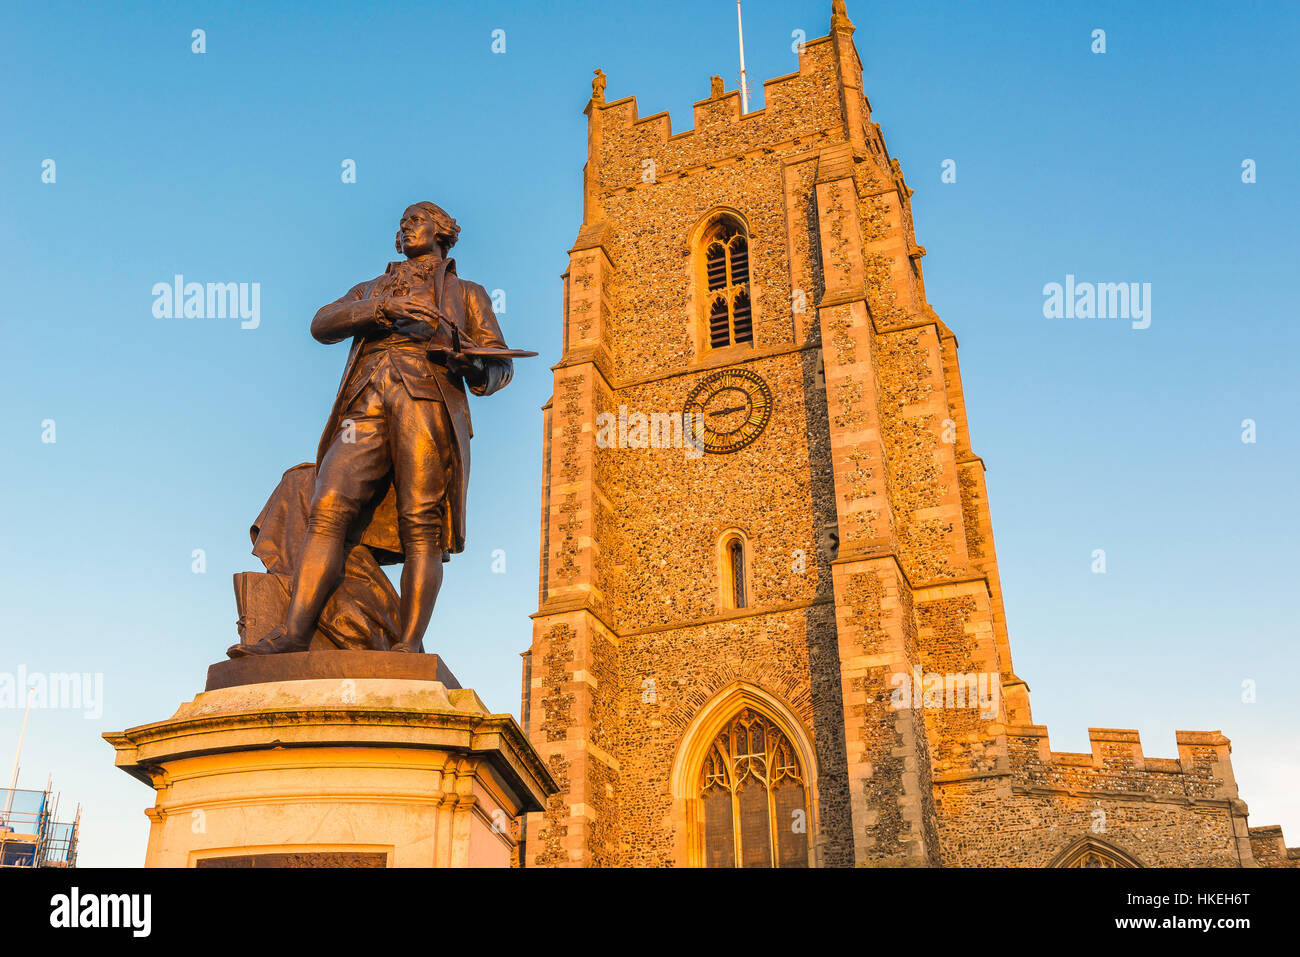 Sudbury Suffolk UK, vue sur la statue de Thomas Gainsborough et la tour de l'église St Pierre située sur la place du marché de Sudbury, Angleterre, Royaume-Uni Banque D'Images